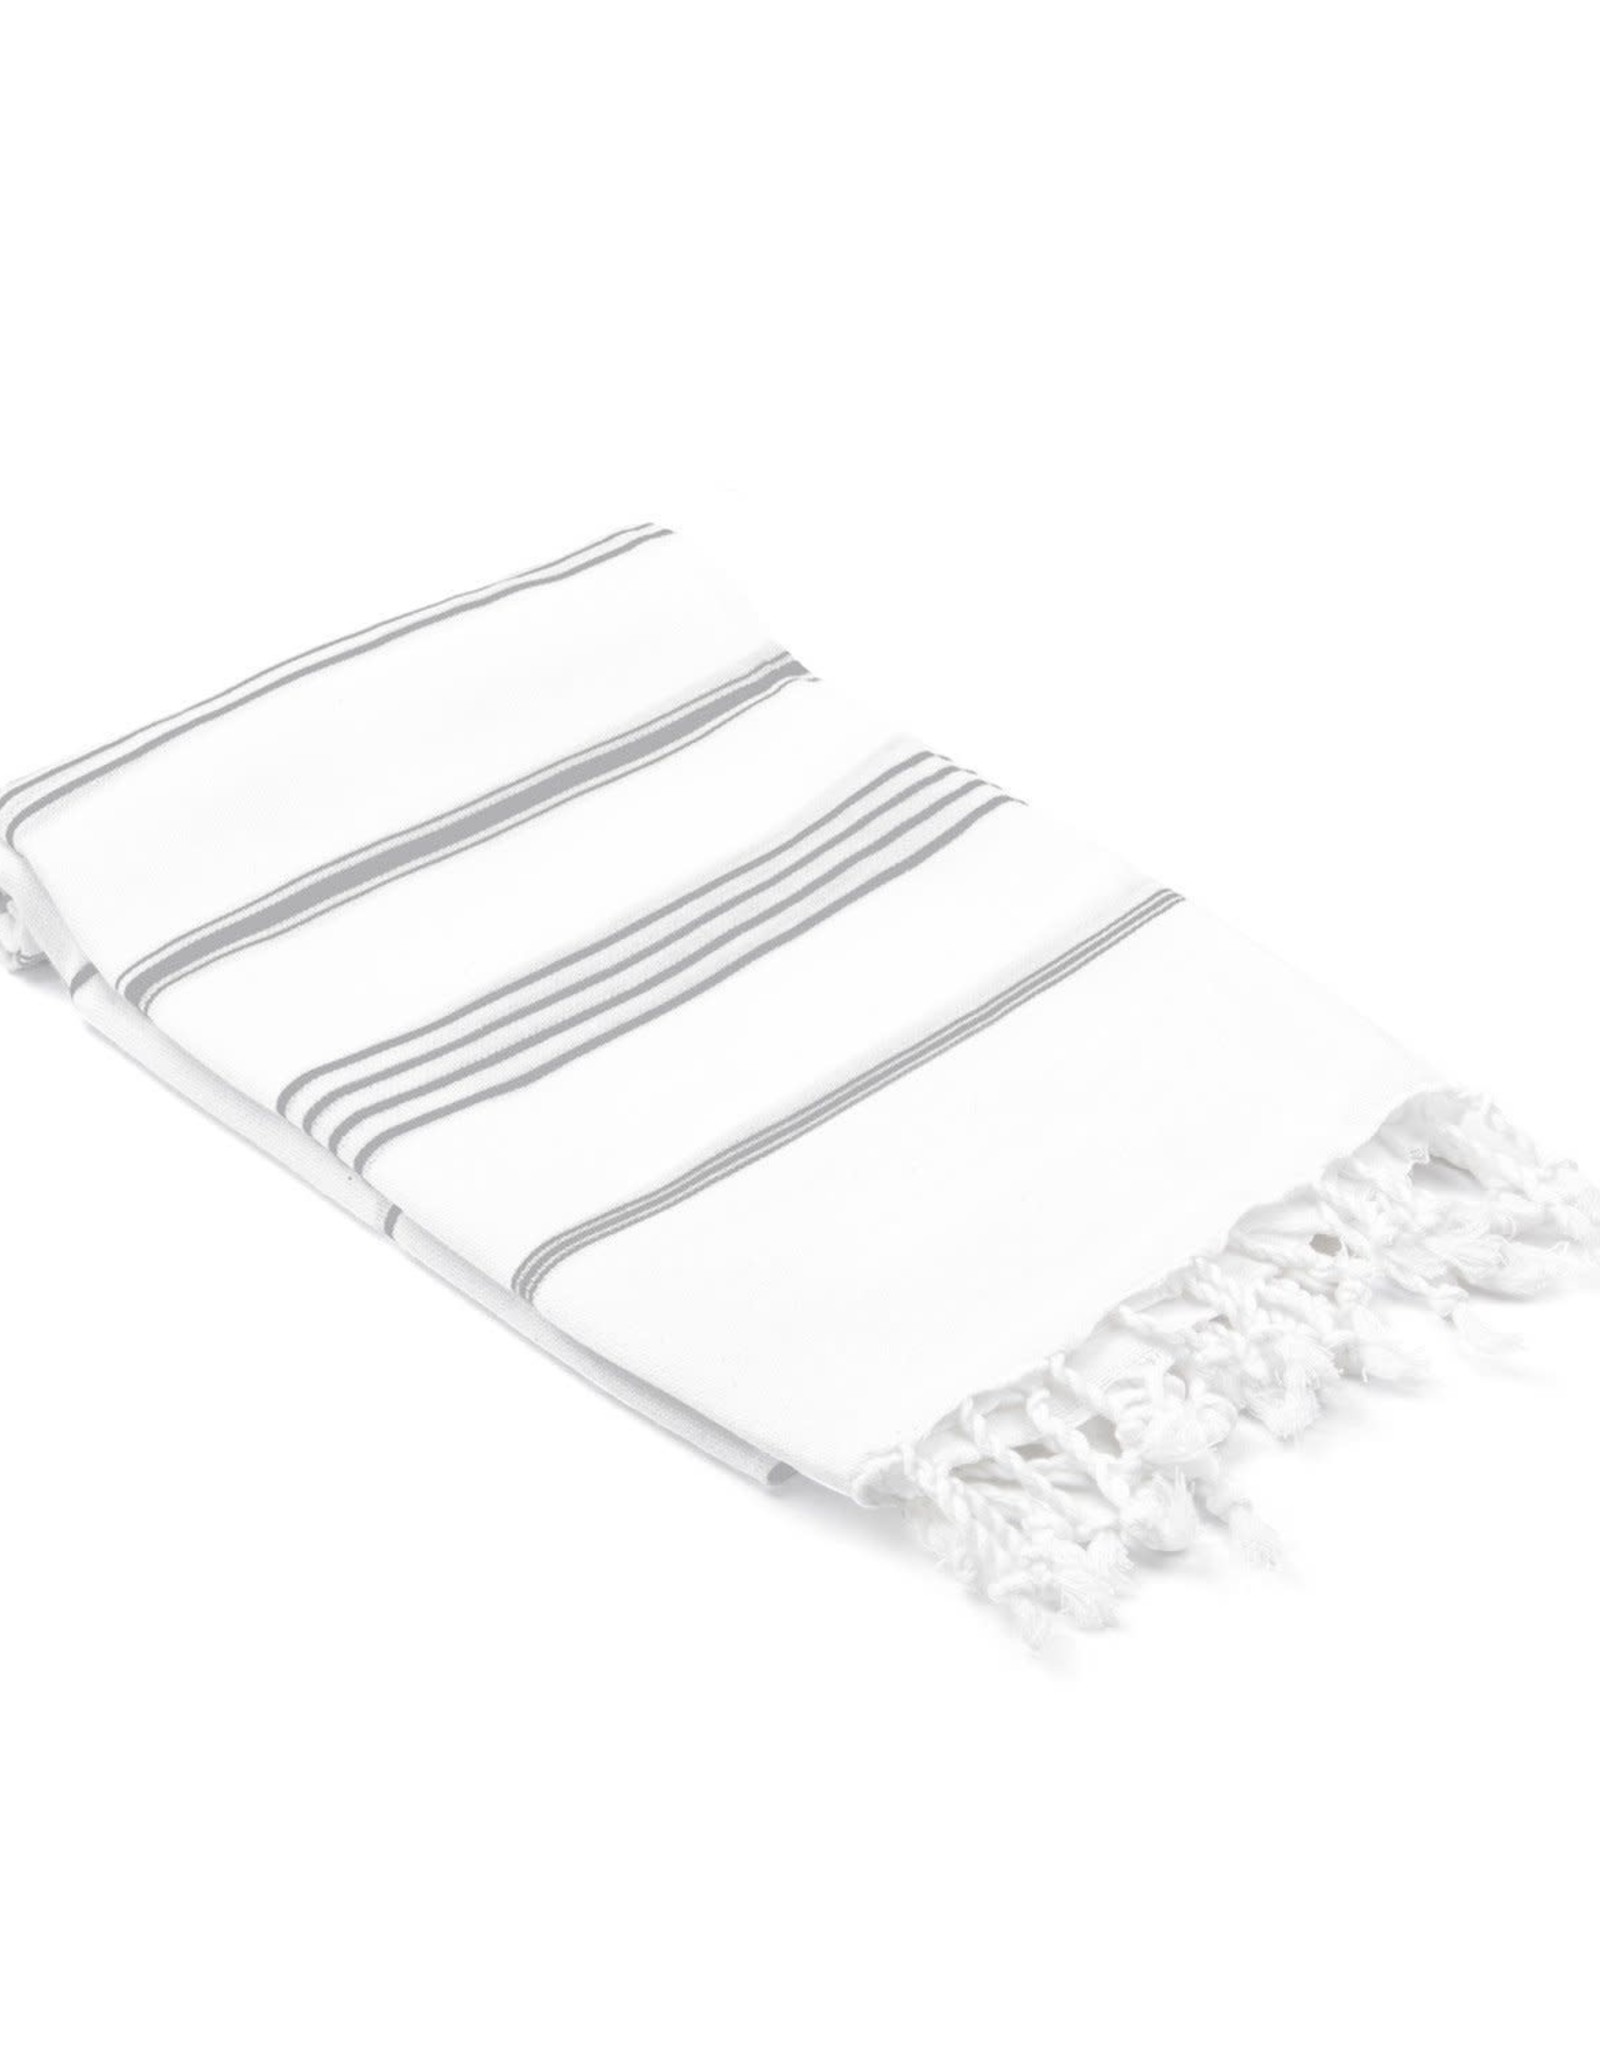 Datca Turkish Hand/Kitchen Towel - White and Grey